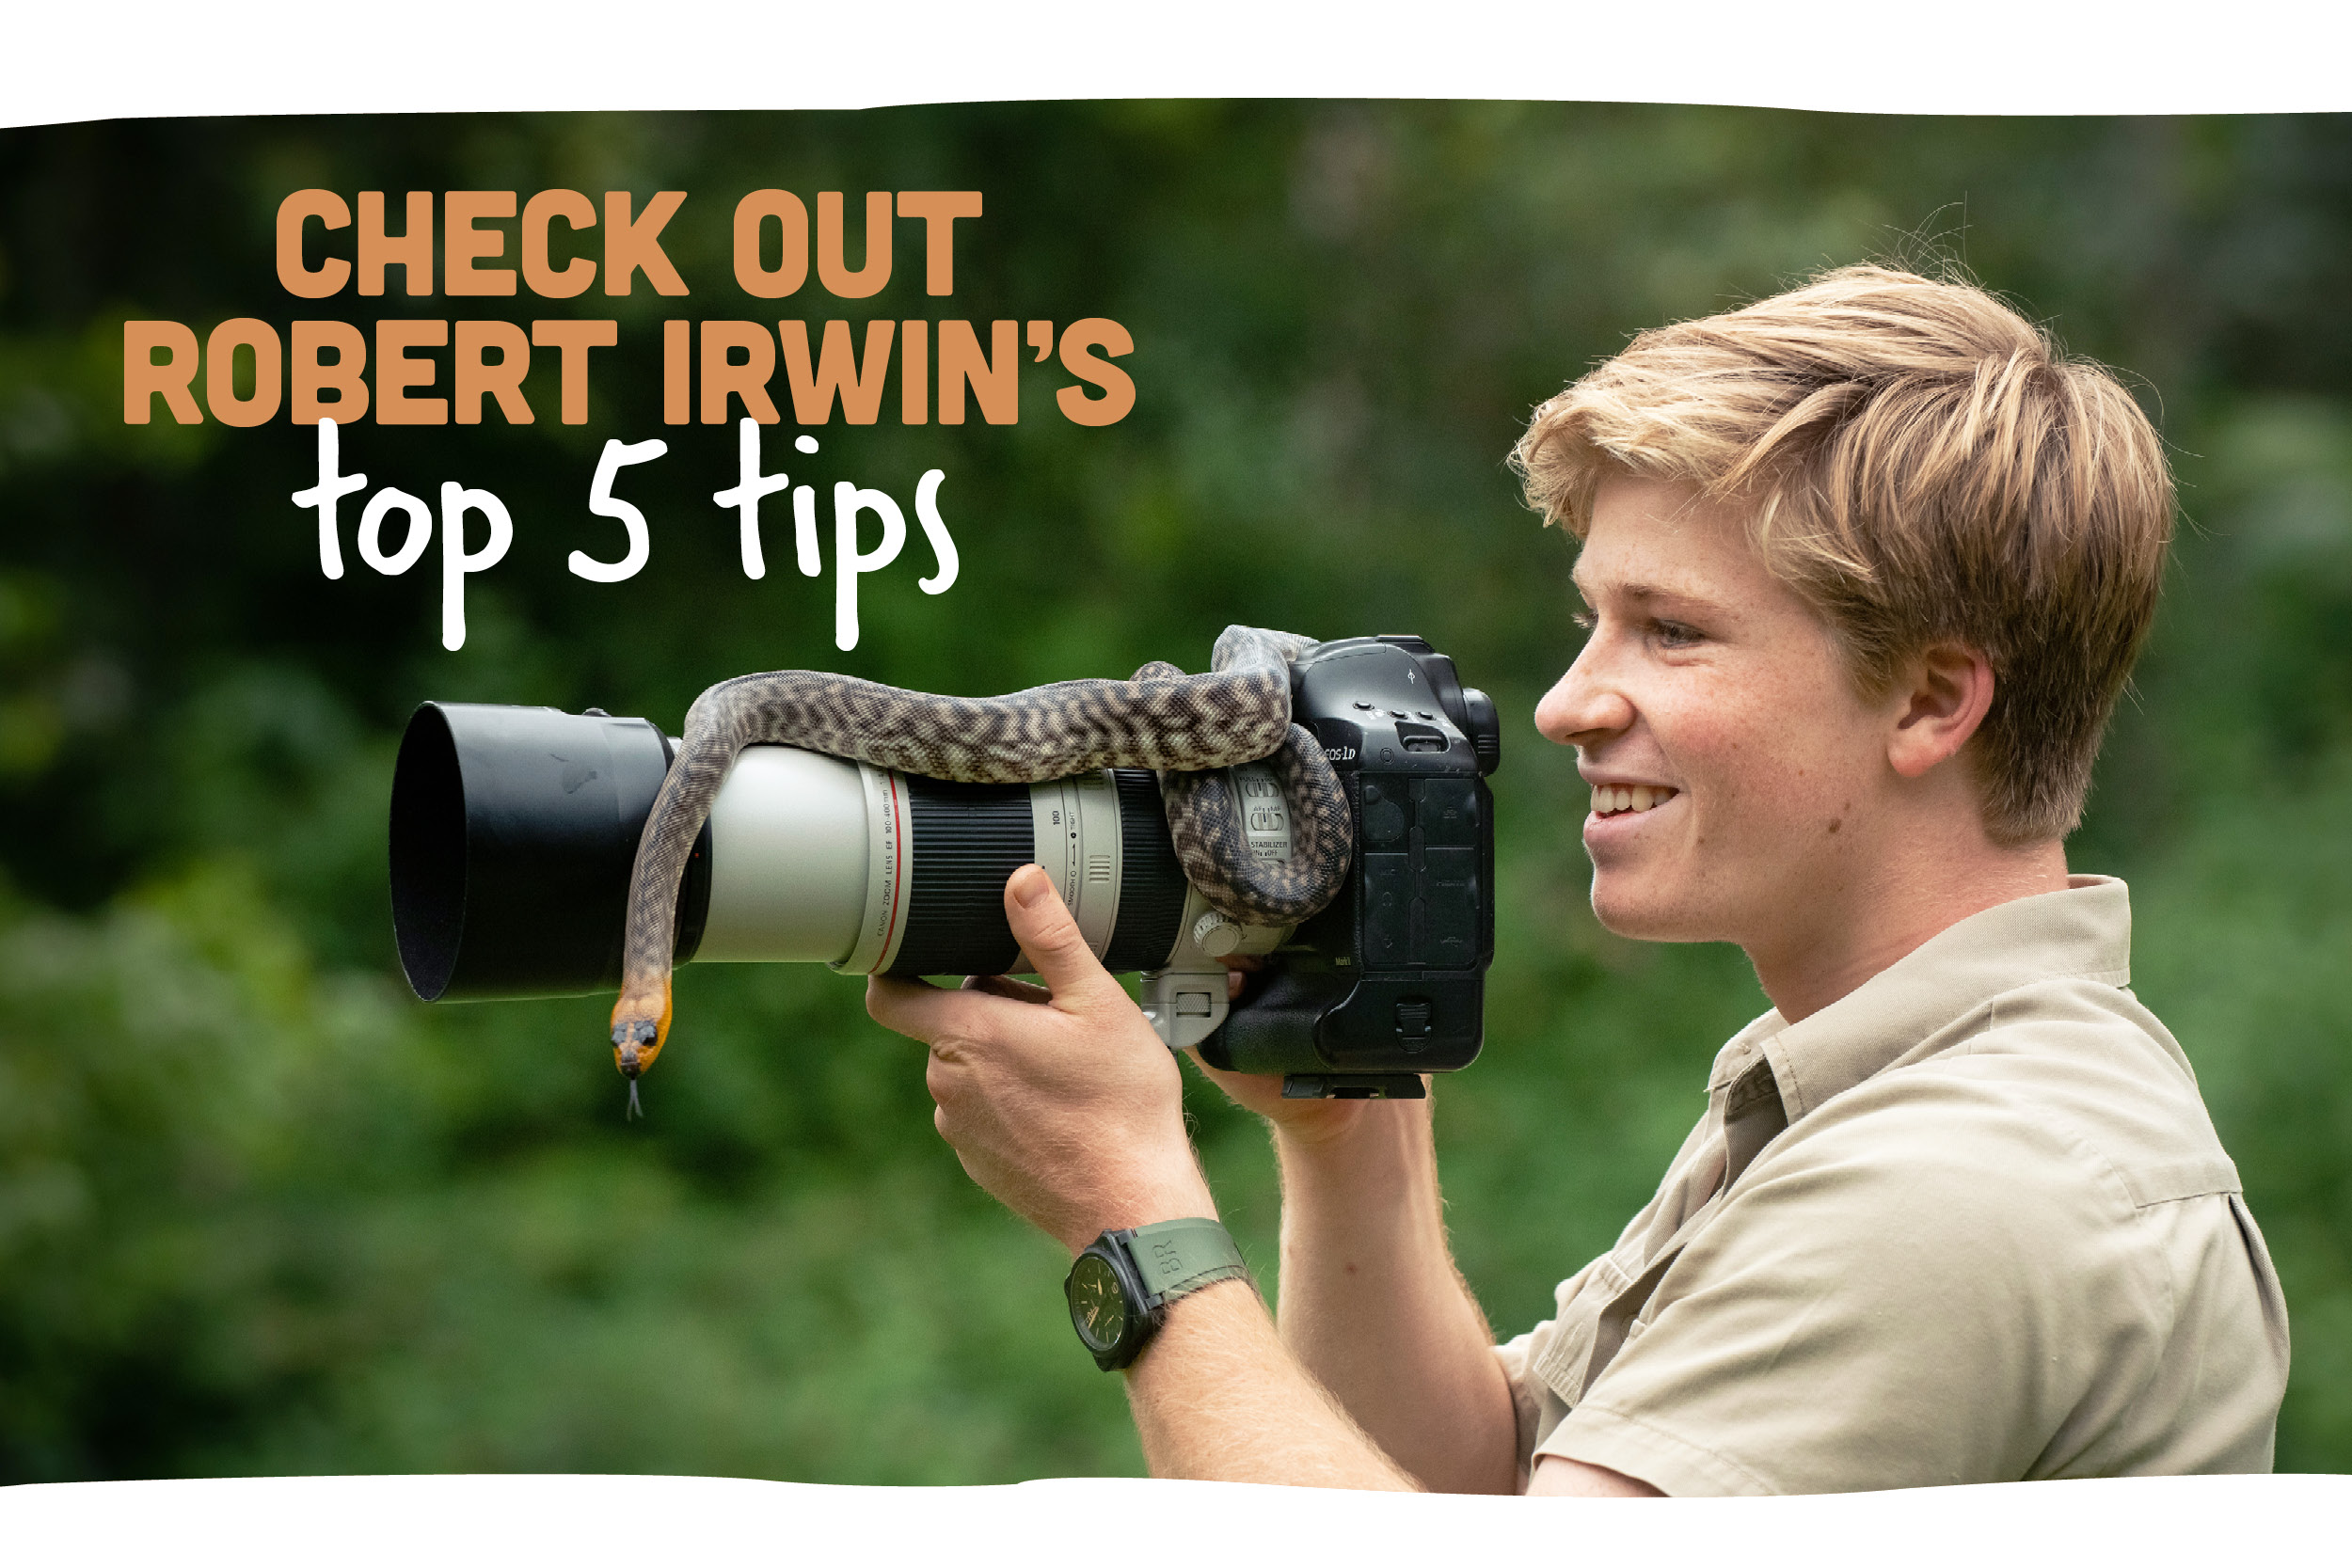 Robert Irwin's Top 5 Photography Tips